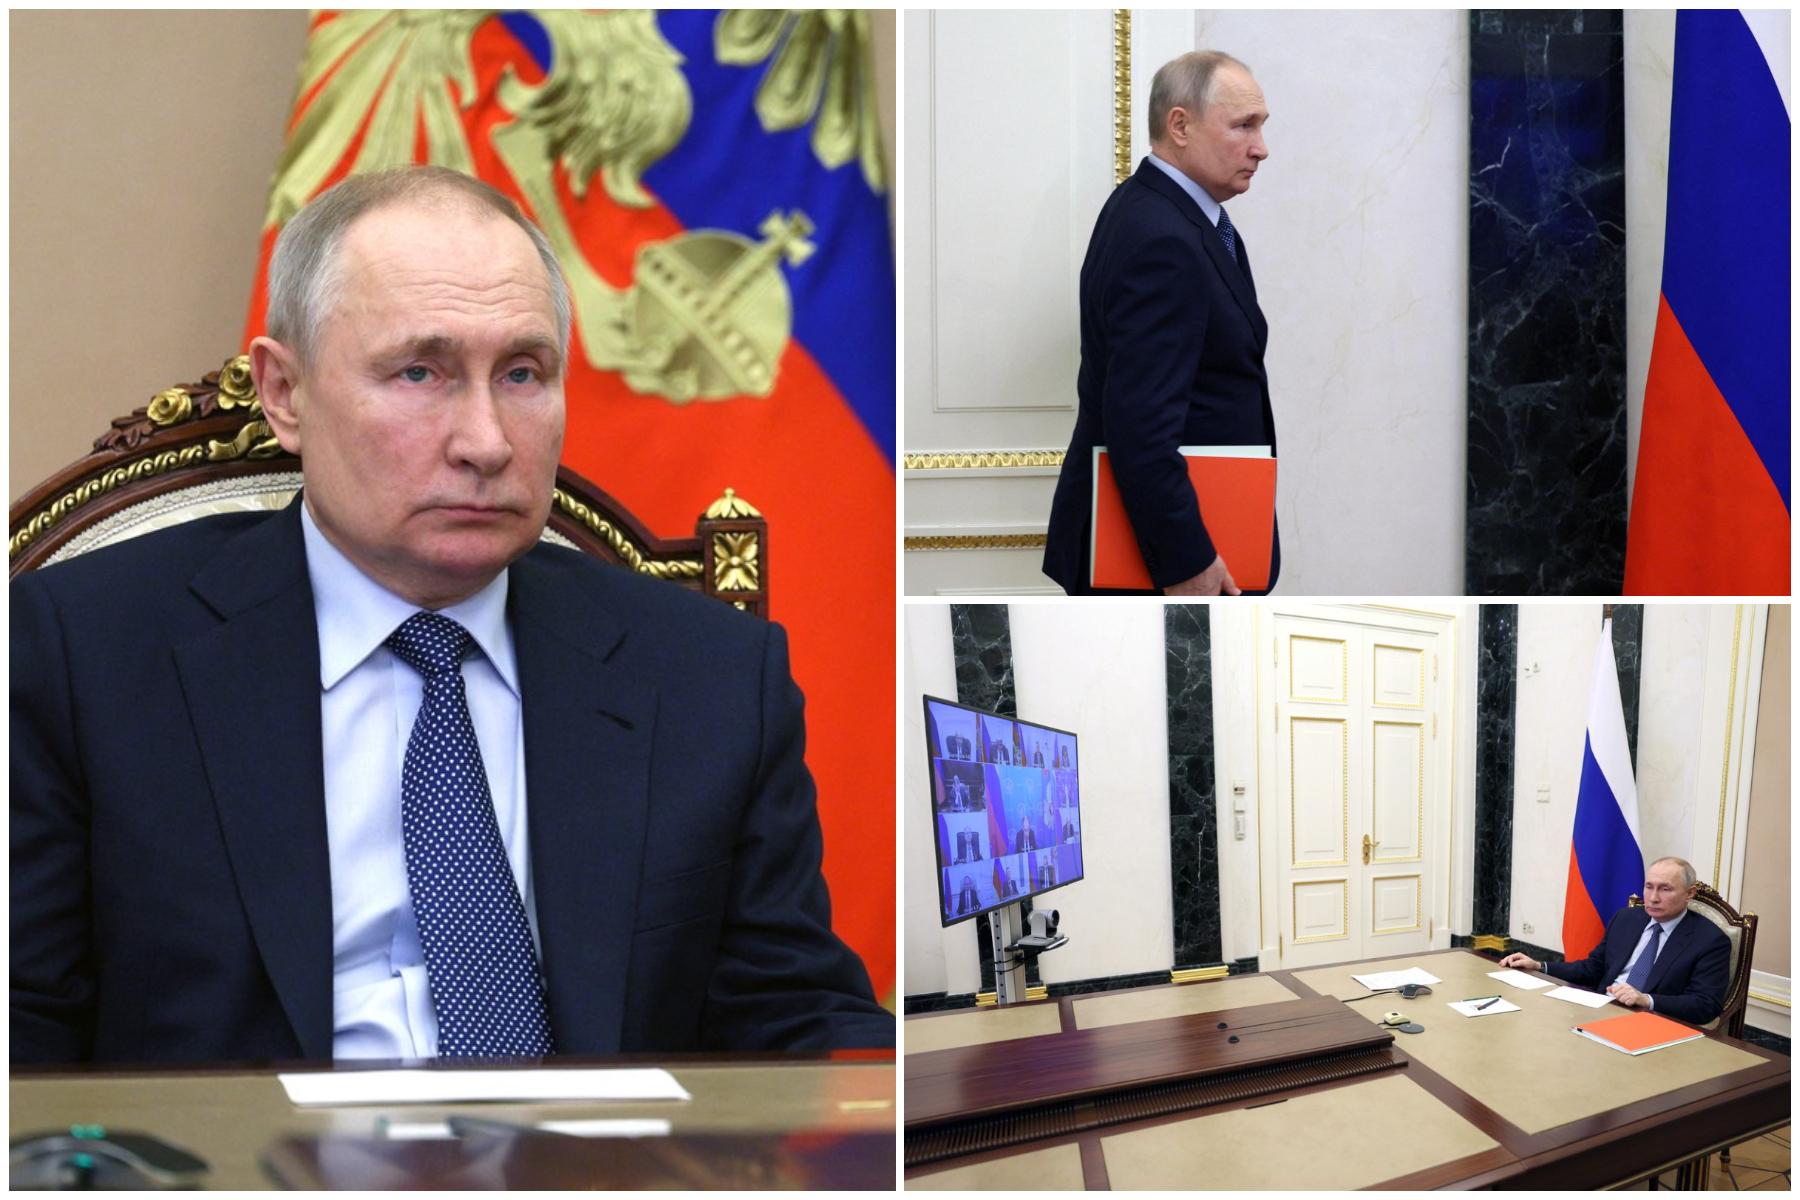 Putin a semnat o nouă strategie de politică externă: Occidentul reprezintă o amenințare existențială pentru Rusia